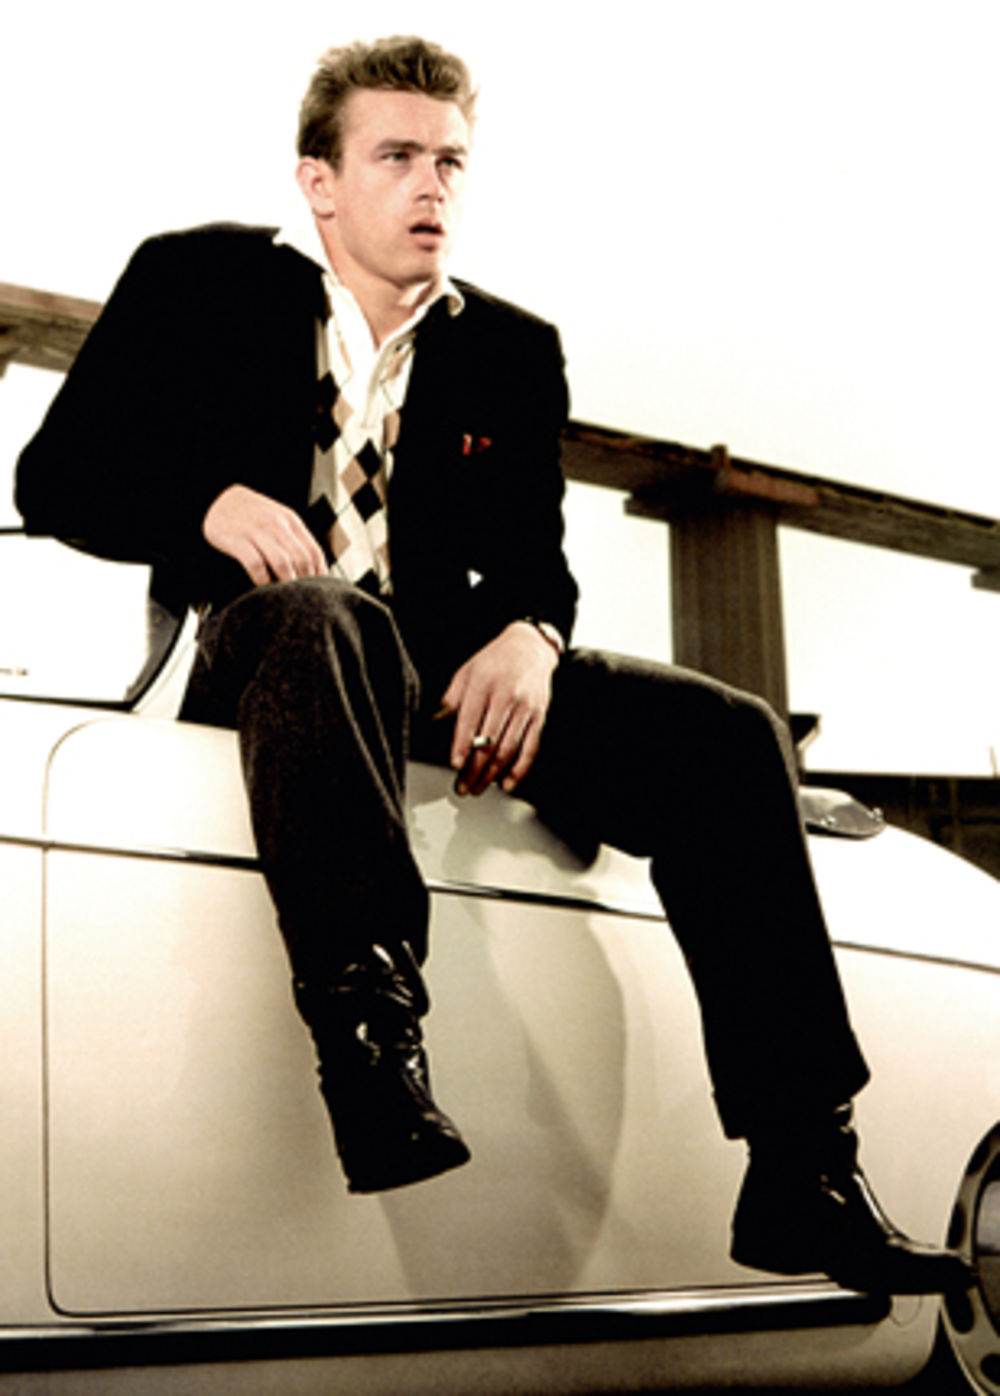 Iako je tokom kratkog života snimio samo tri filma, glumac Džejms Din predstavlja jednu od najuticajnijih ličnosti Holivuda i seks simbol čiji je lik obavijen mnogim tajnama, kao i nagađanjem da je bio homoseksualac